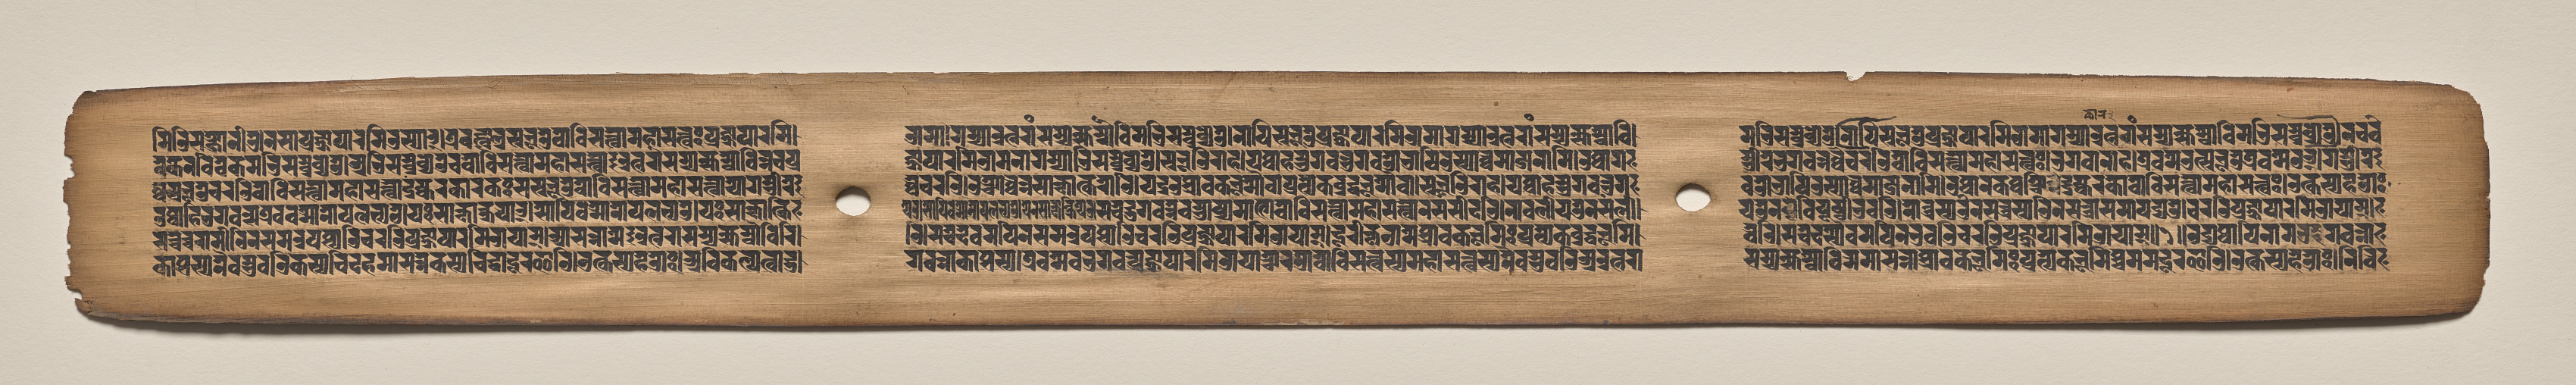 Text, folio 155 (recto), from a Manuscript of the Perfection of Wisdom in Eight Thousand Lines (Ashtasahasrika Prajnaparamita-sutra)